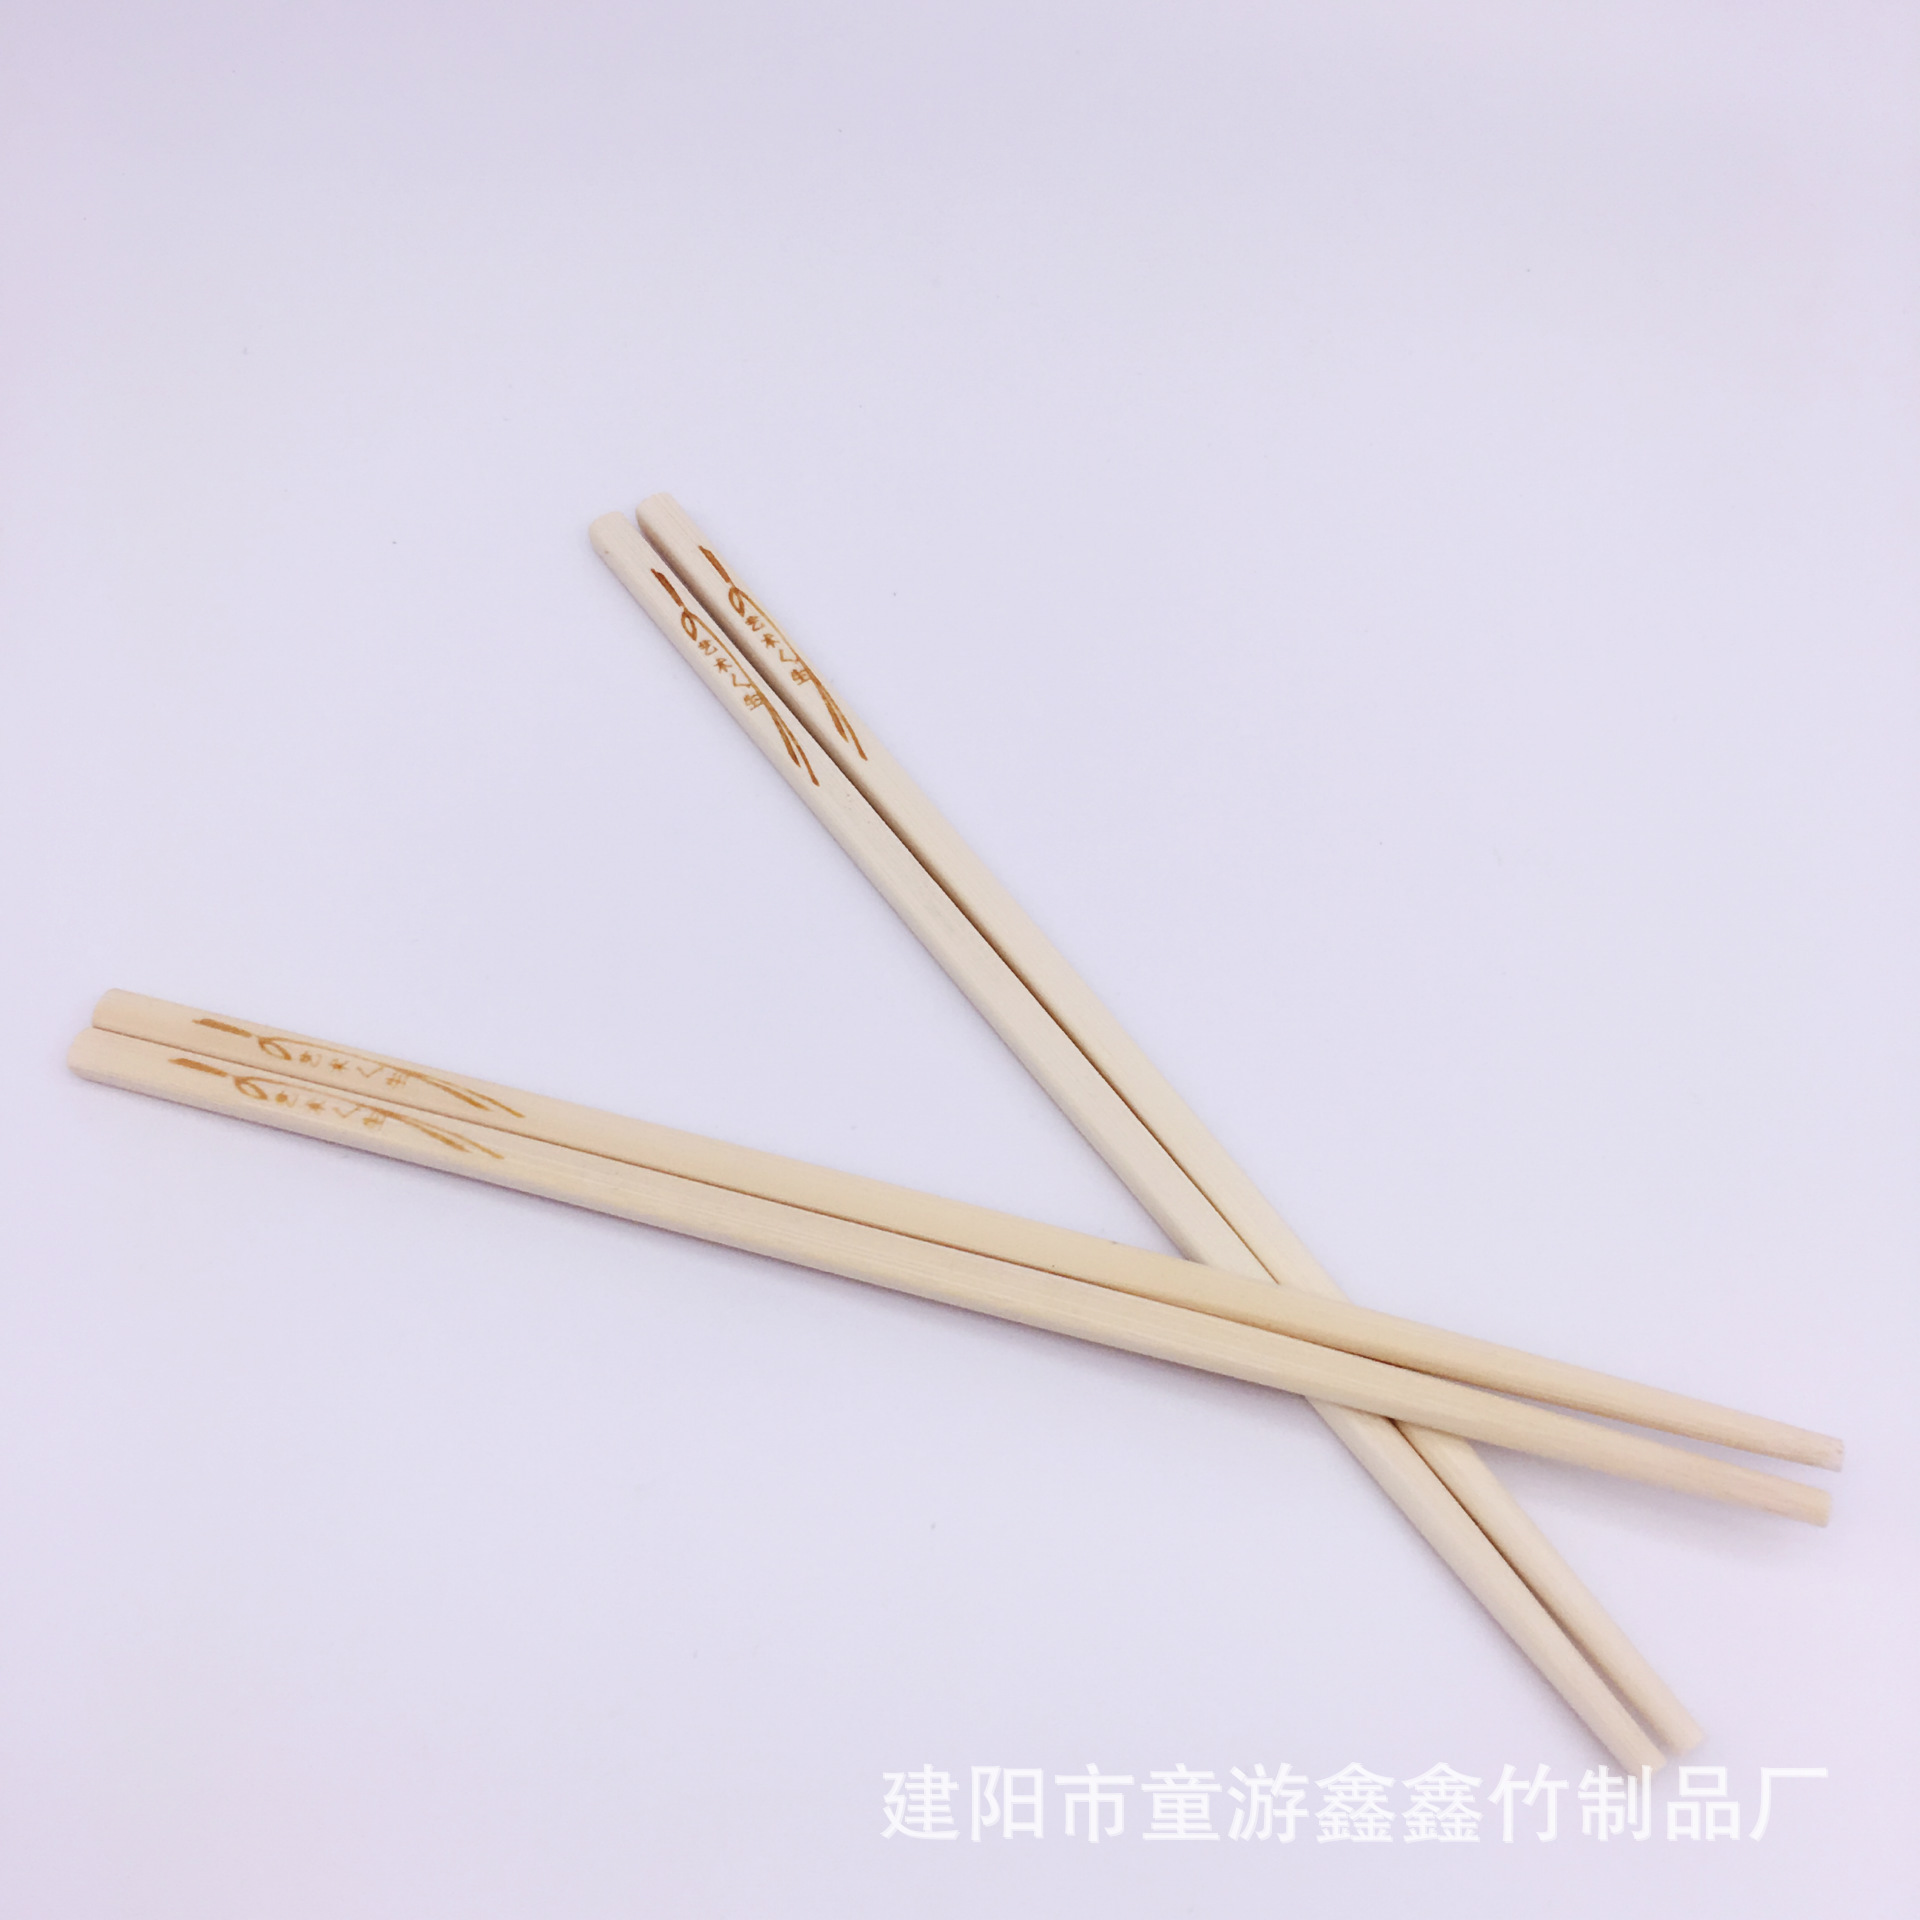 天然无漆烙花竹筷子本色烙花竹筷  方筷  艺术人生 （无节）示例图4